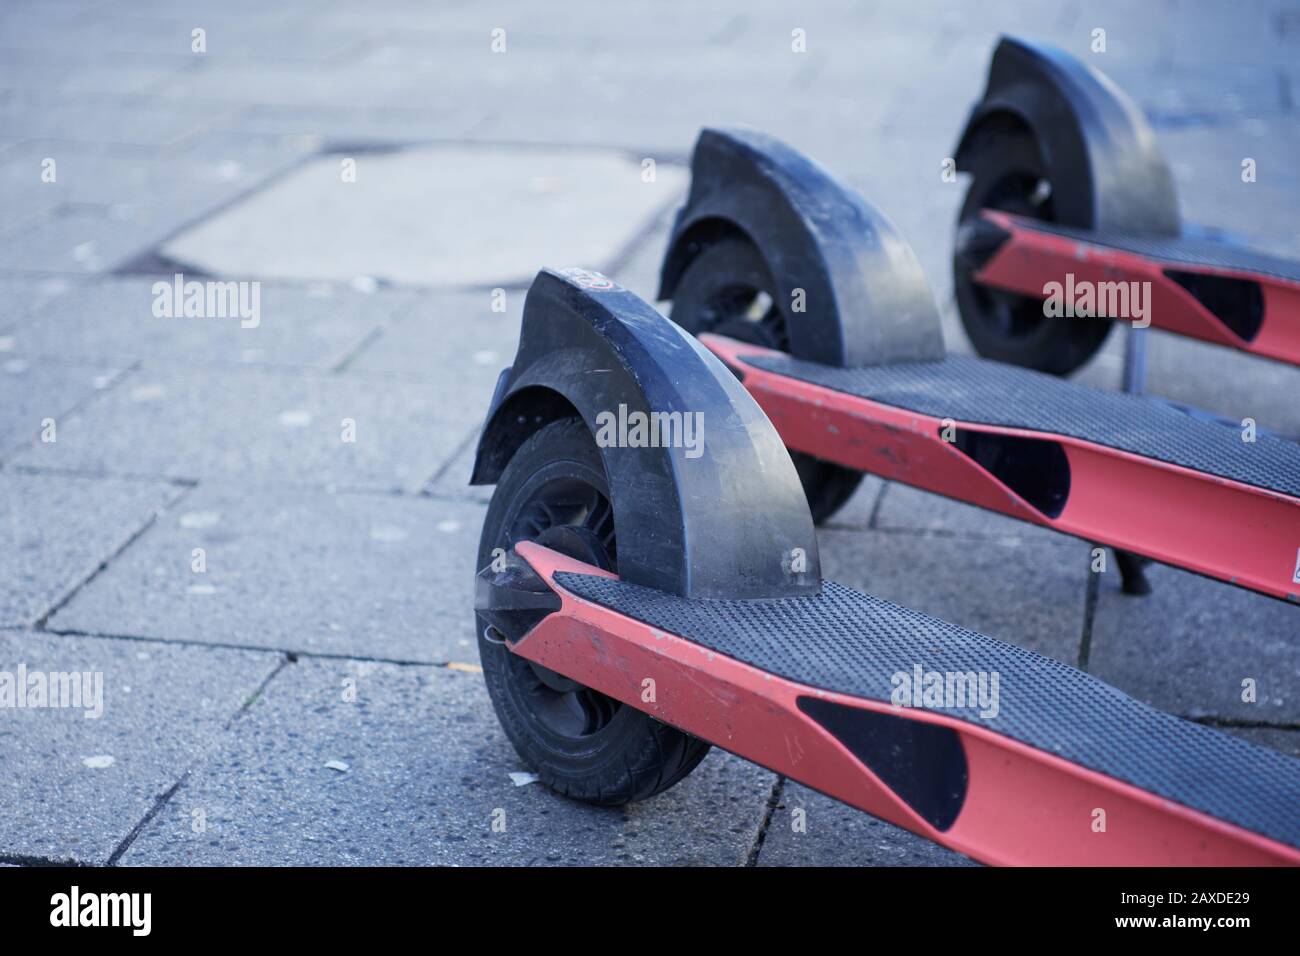 Munich, Allemagne - 20 février 2020: Gros plan sur les scooters roses alignés sur le pavé Banque D'Images